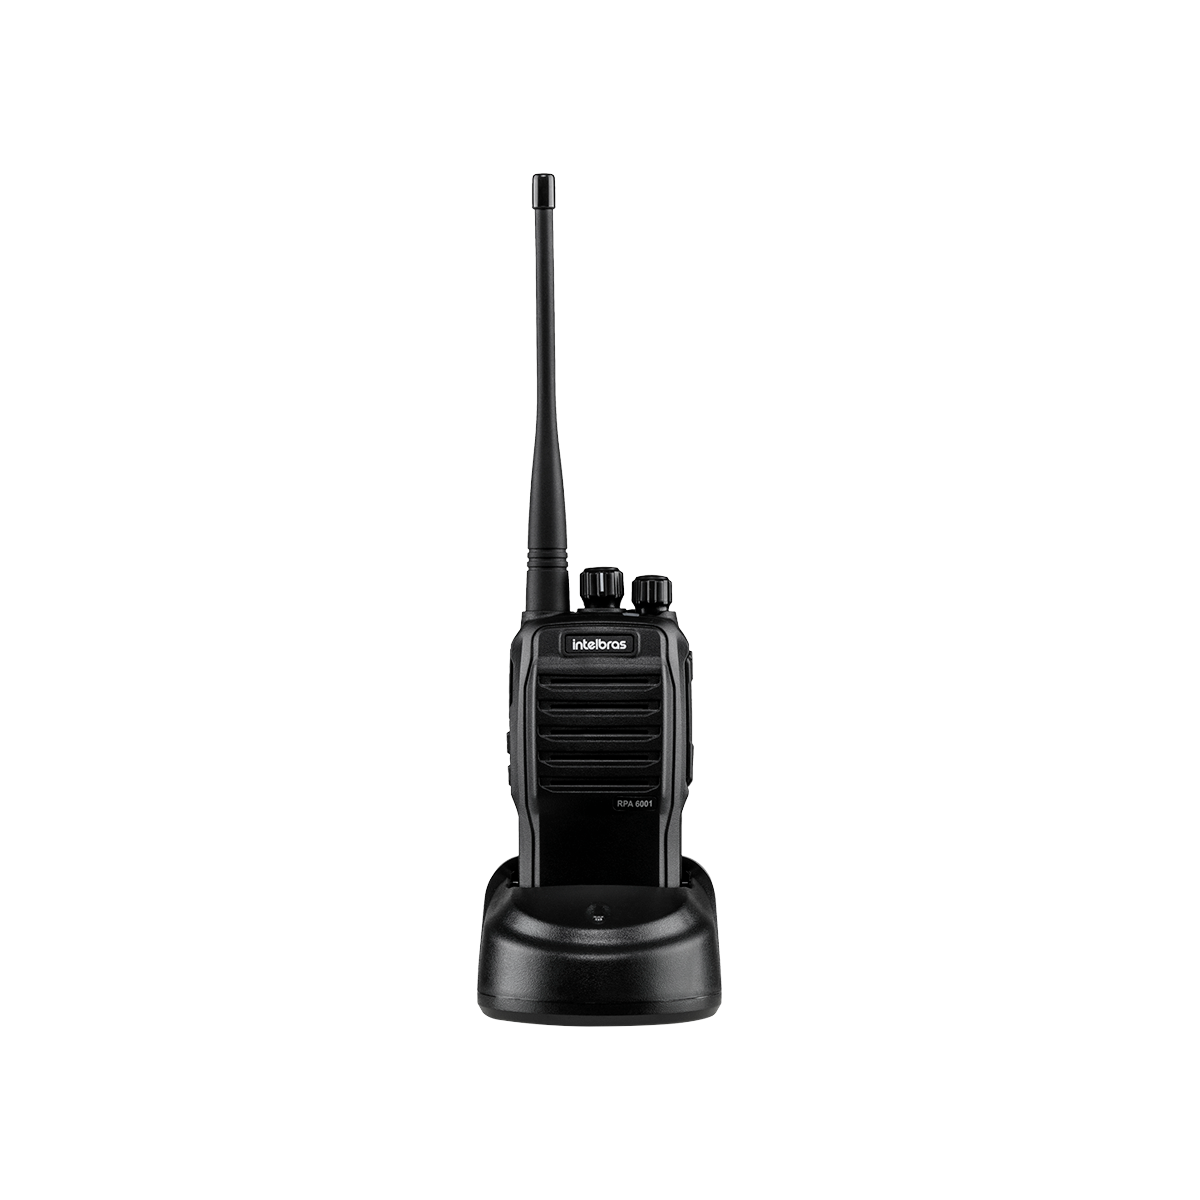 Rádio profissional Analógico UHF RPA 6001